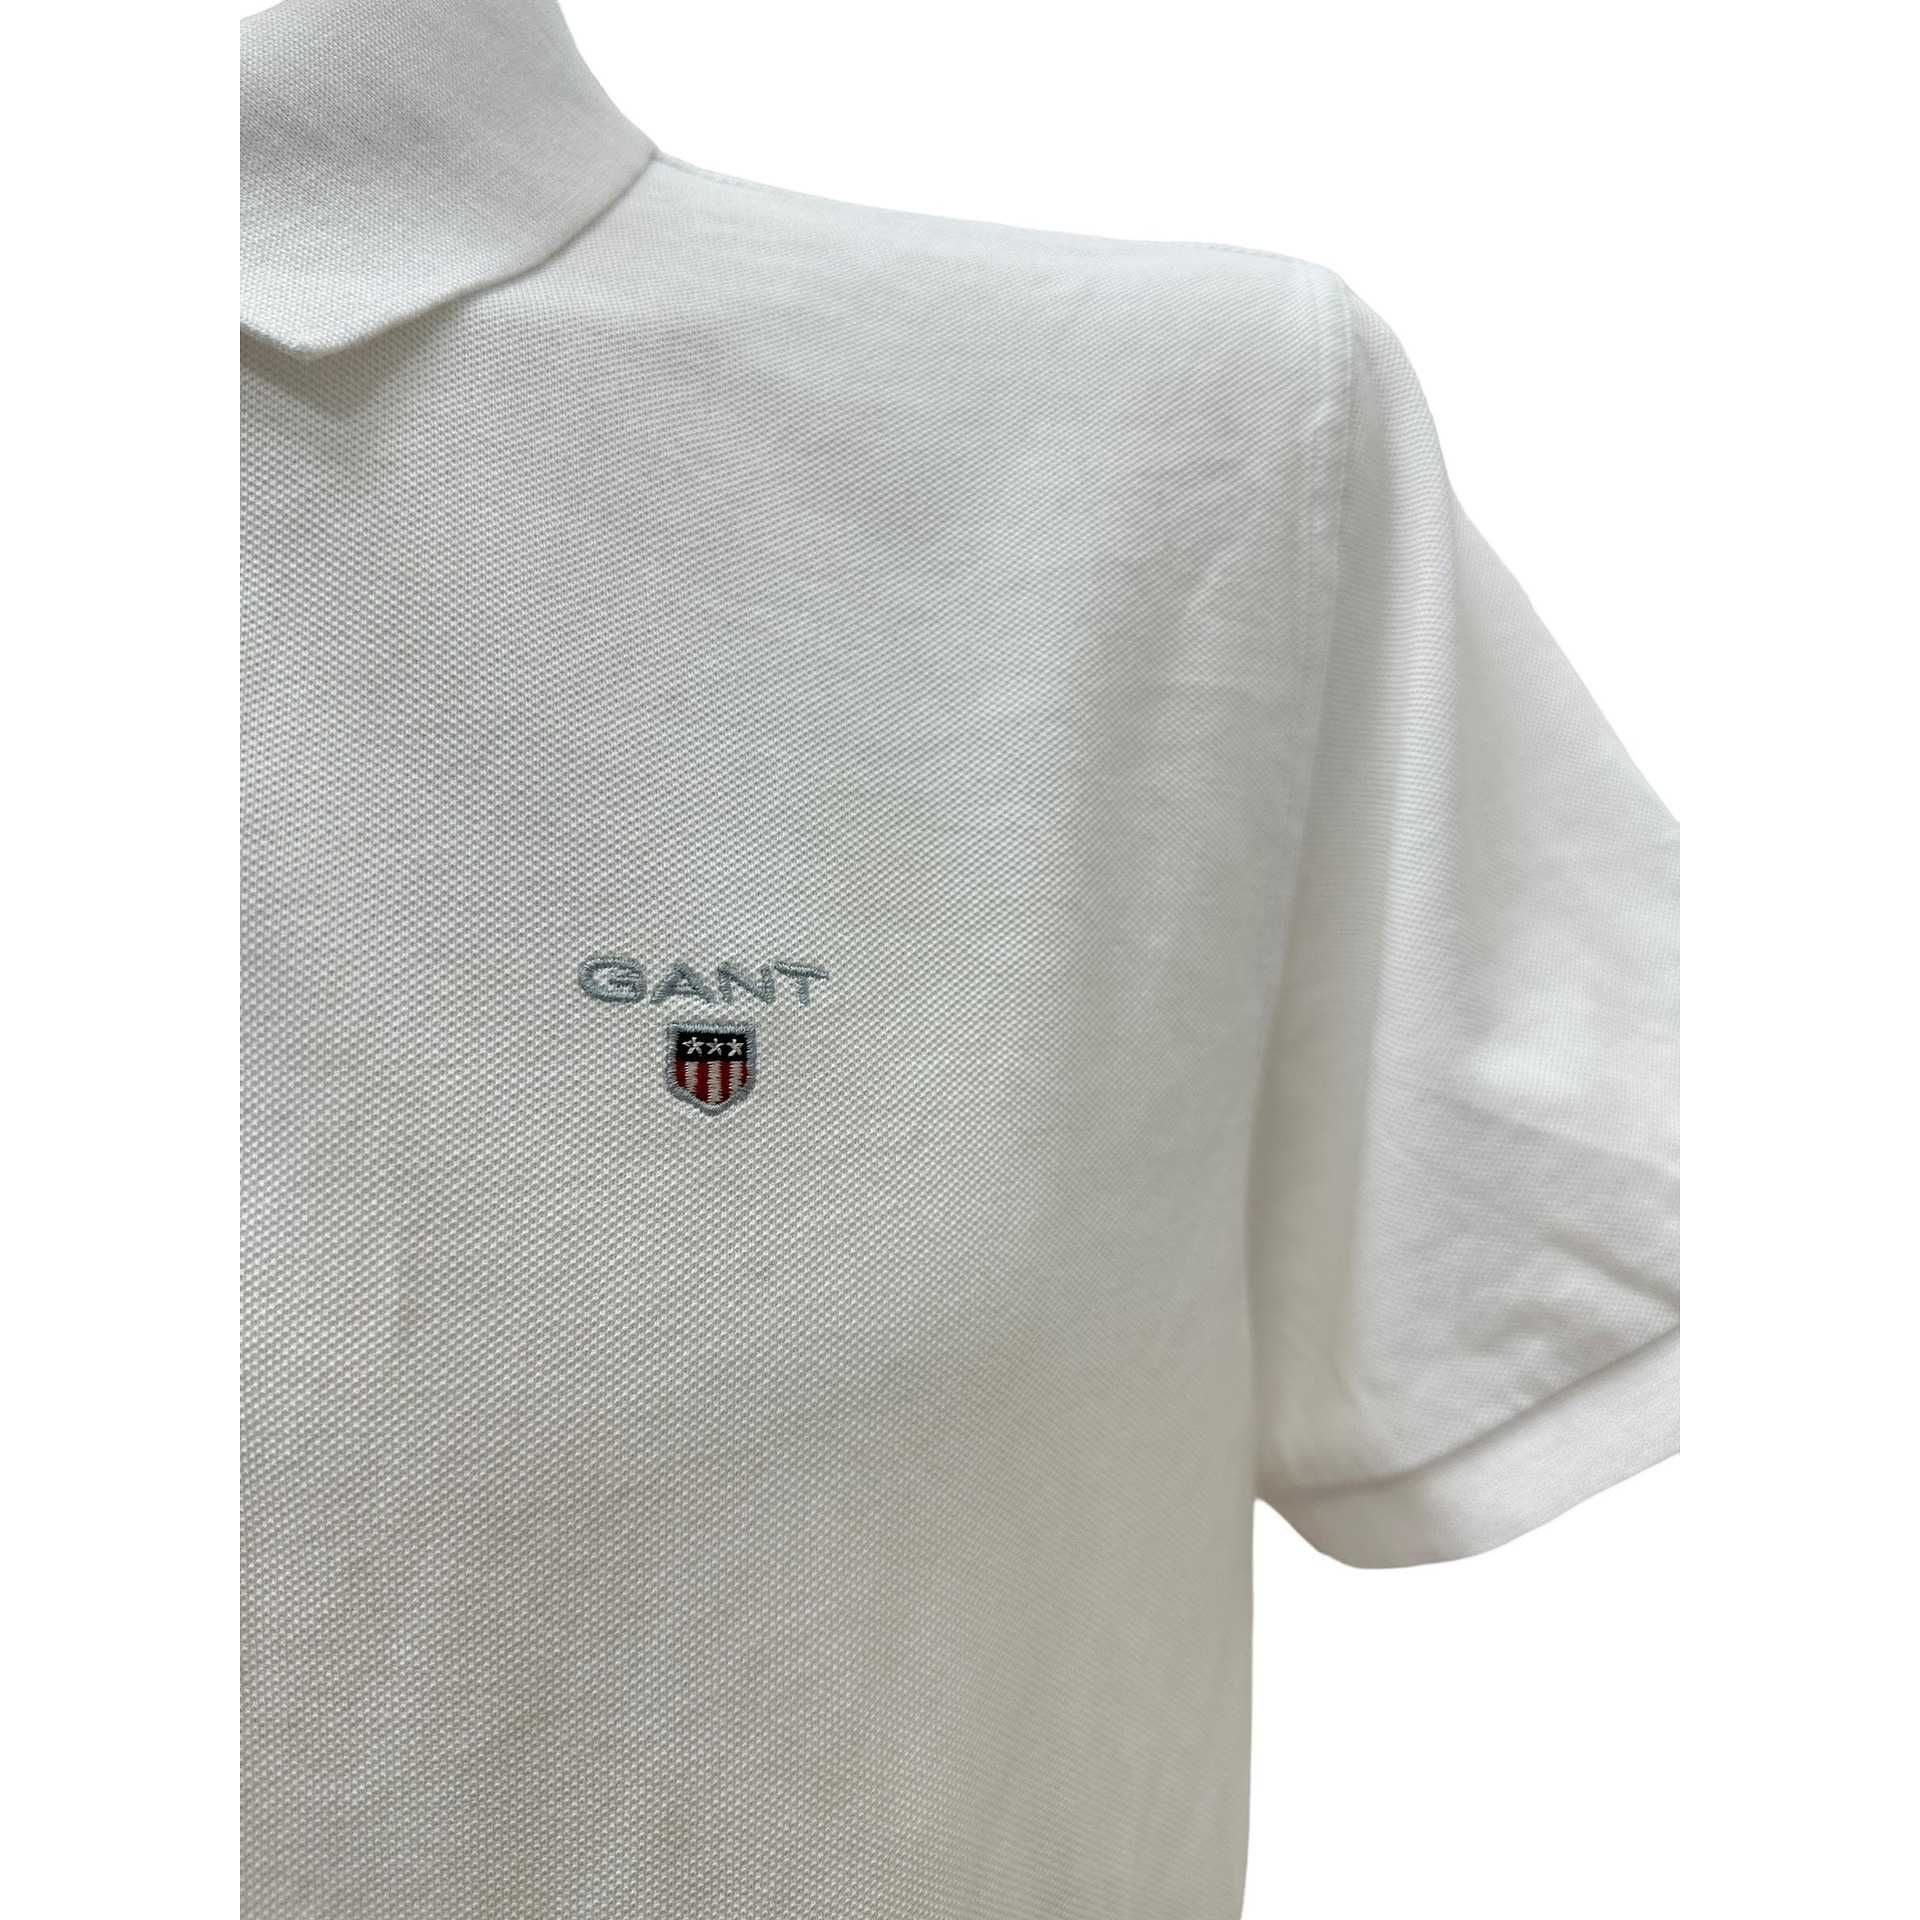 Мъжки полошърт GANT размер L / XL бяла тениска